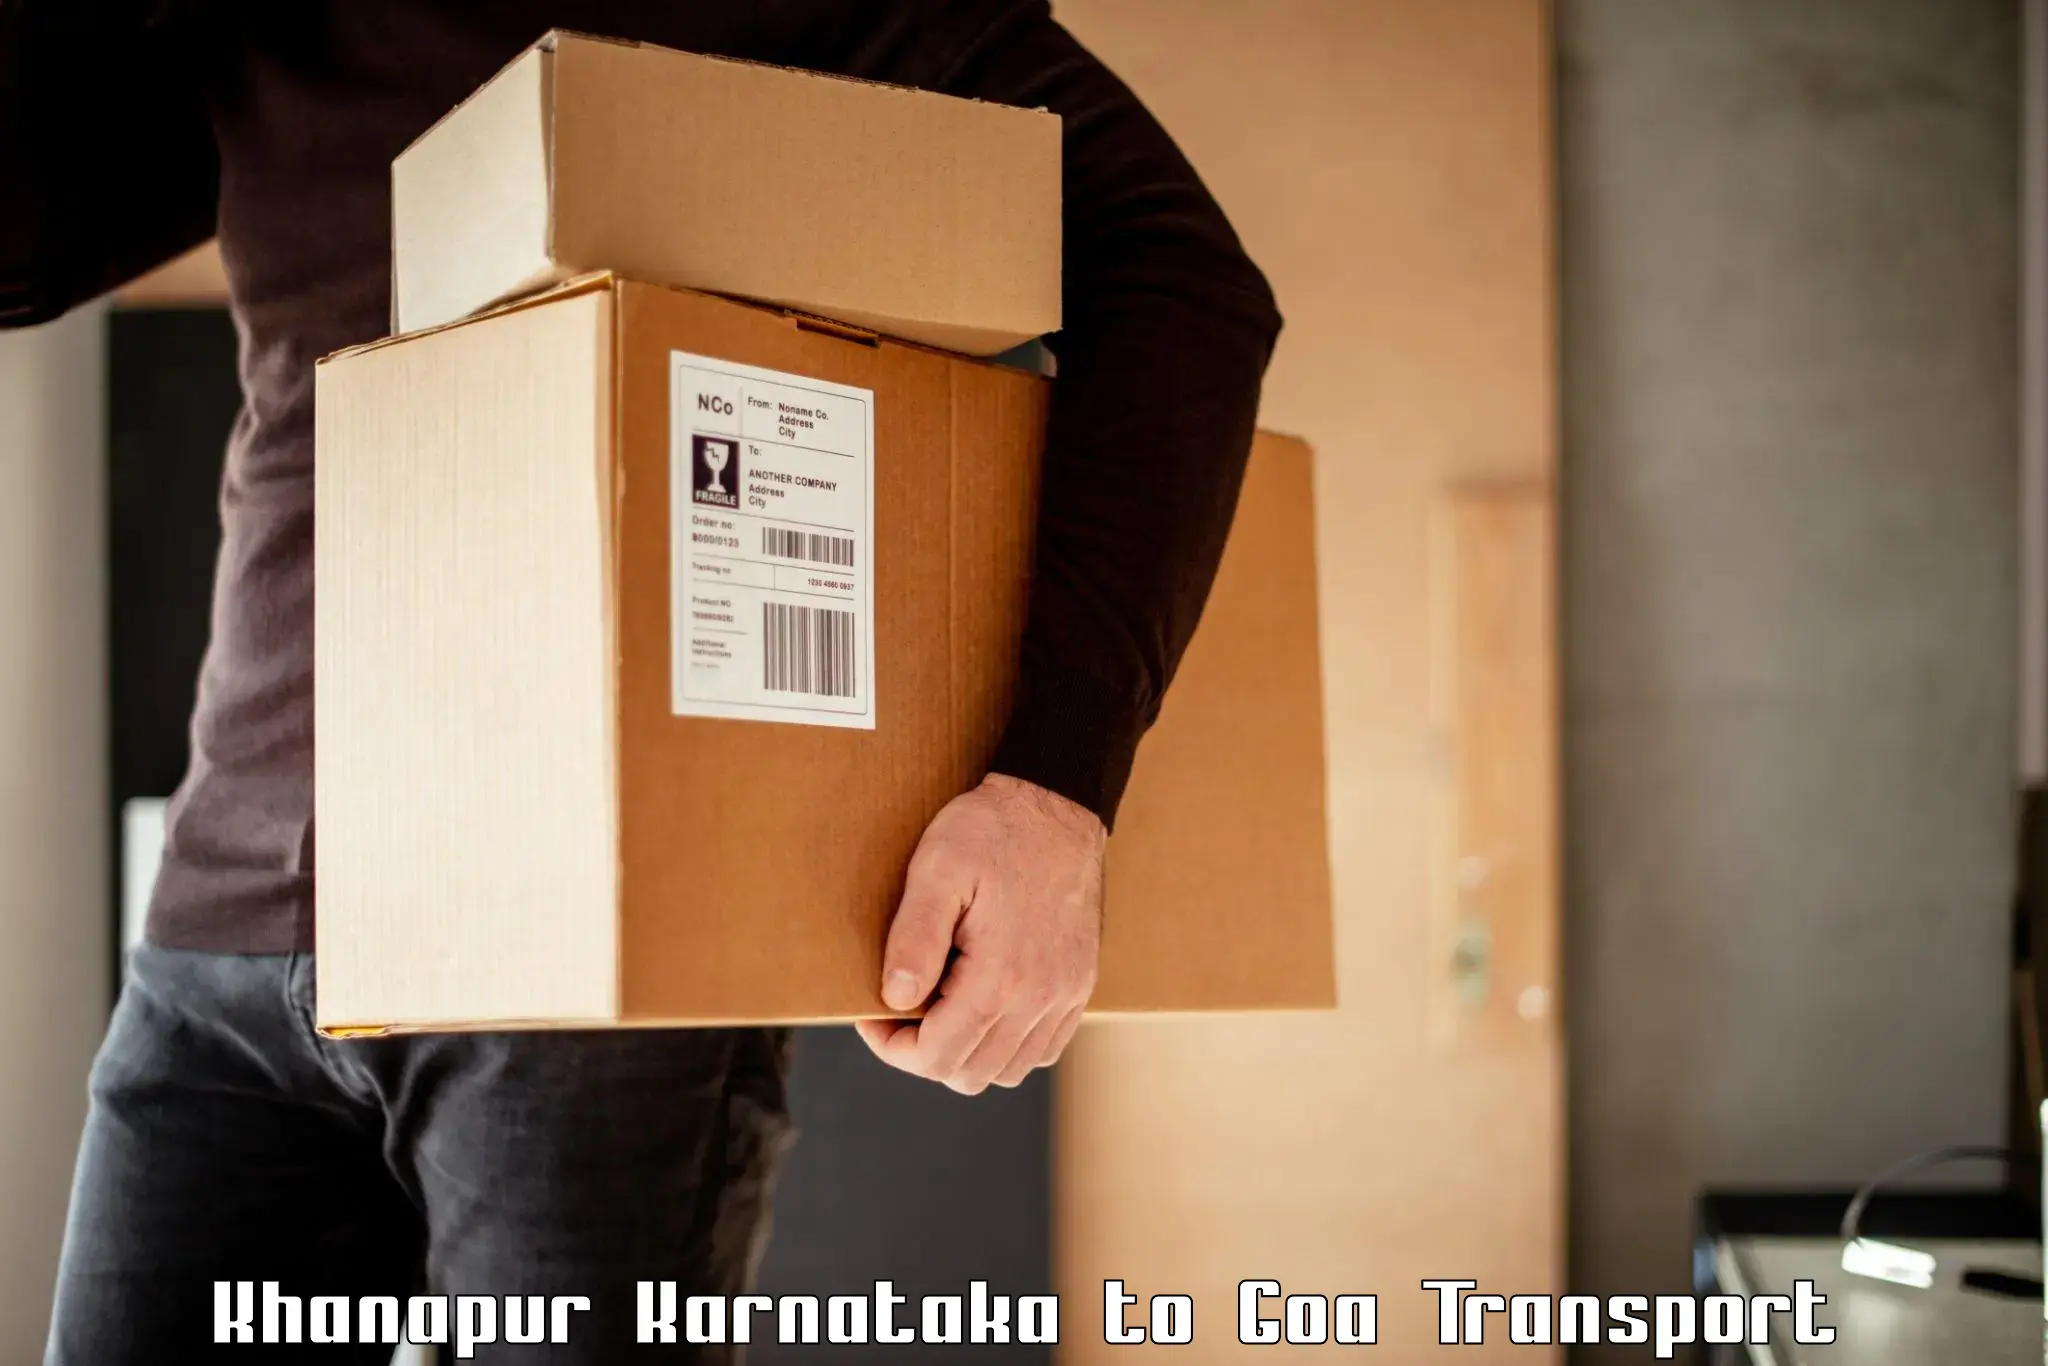 Two wheeler parcel service Khanapur Karnataka to Canacona